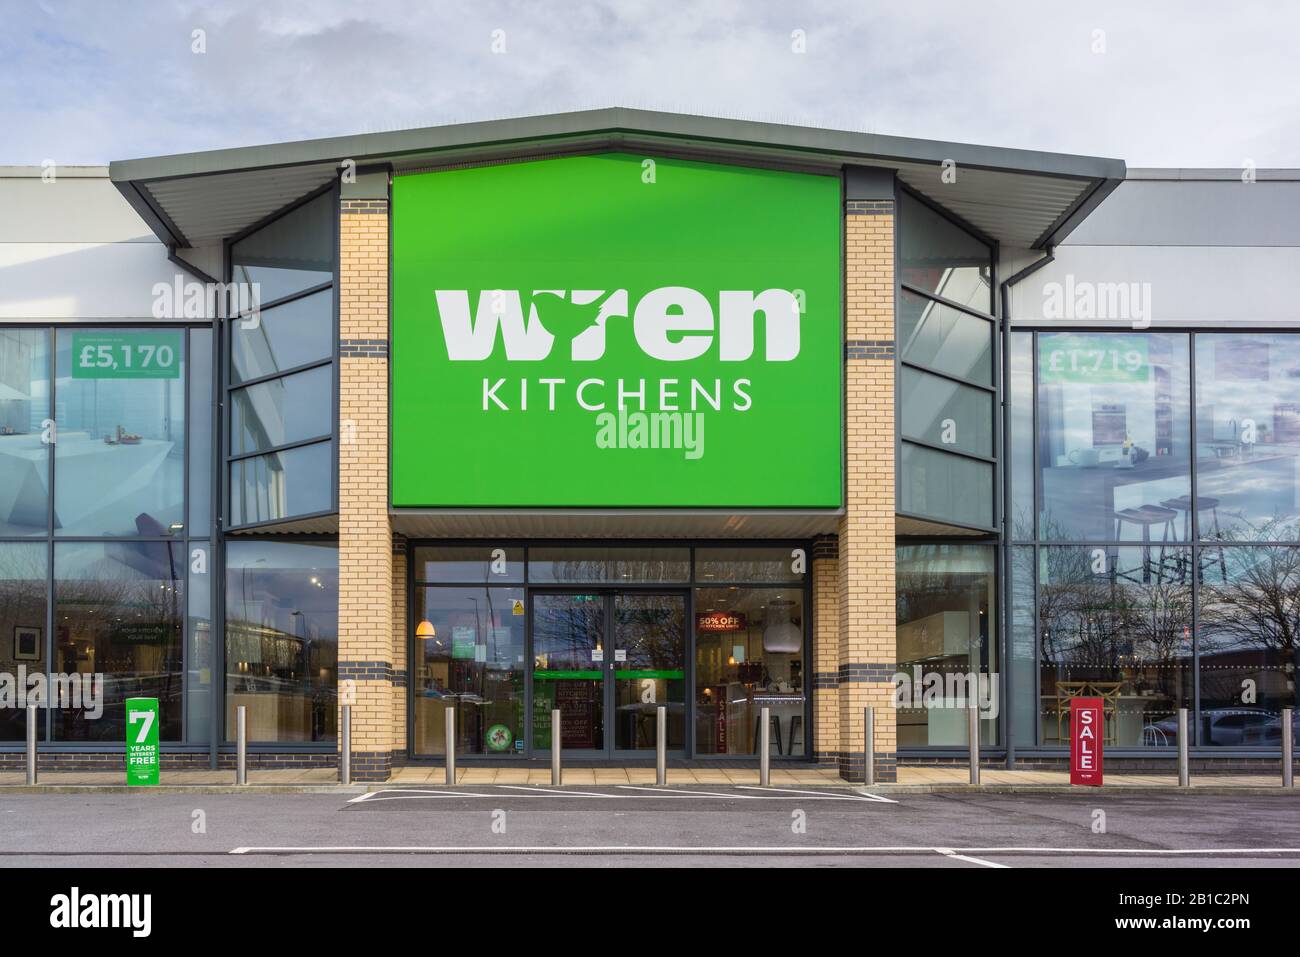 Wren kitchens in Southampton, England, UK Stock Photo